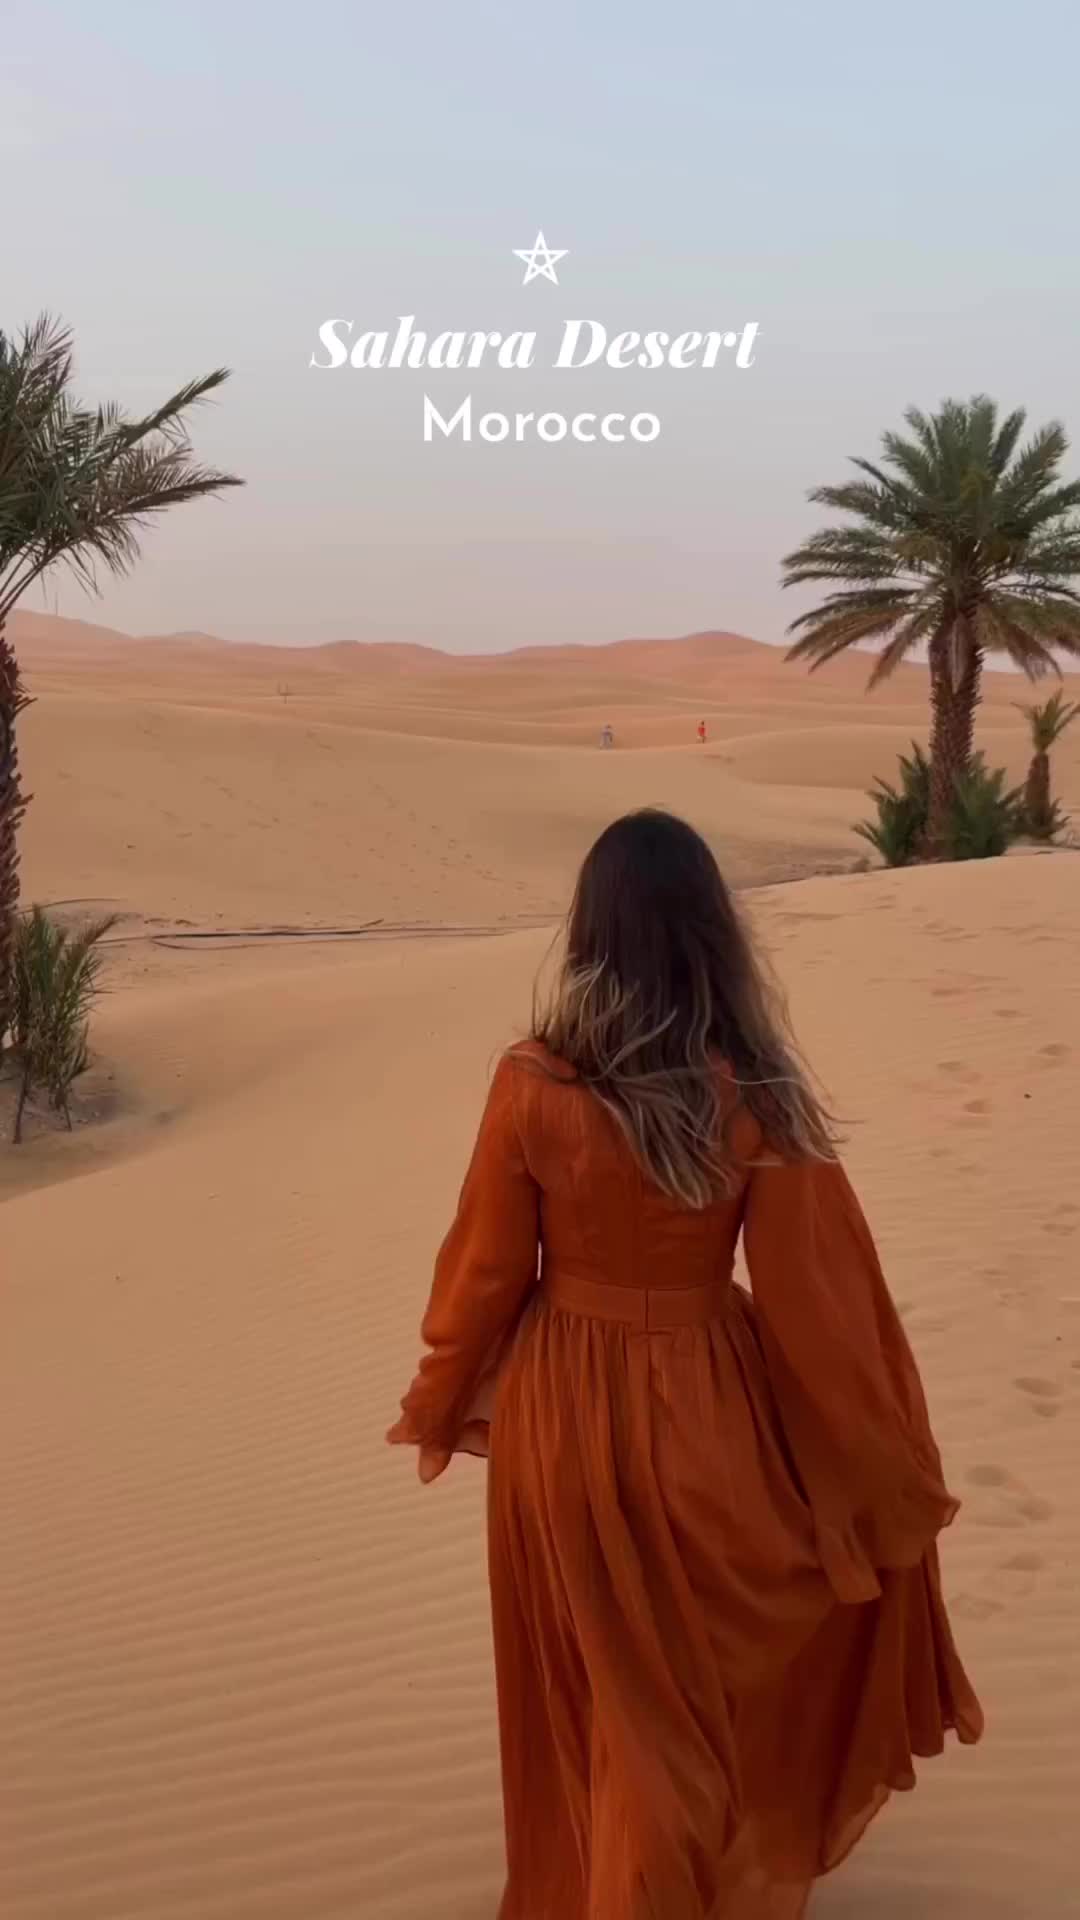 Magical Sunset in Sahara Desert, Morocco 🌅